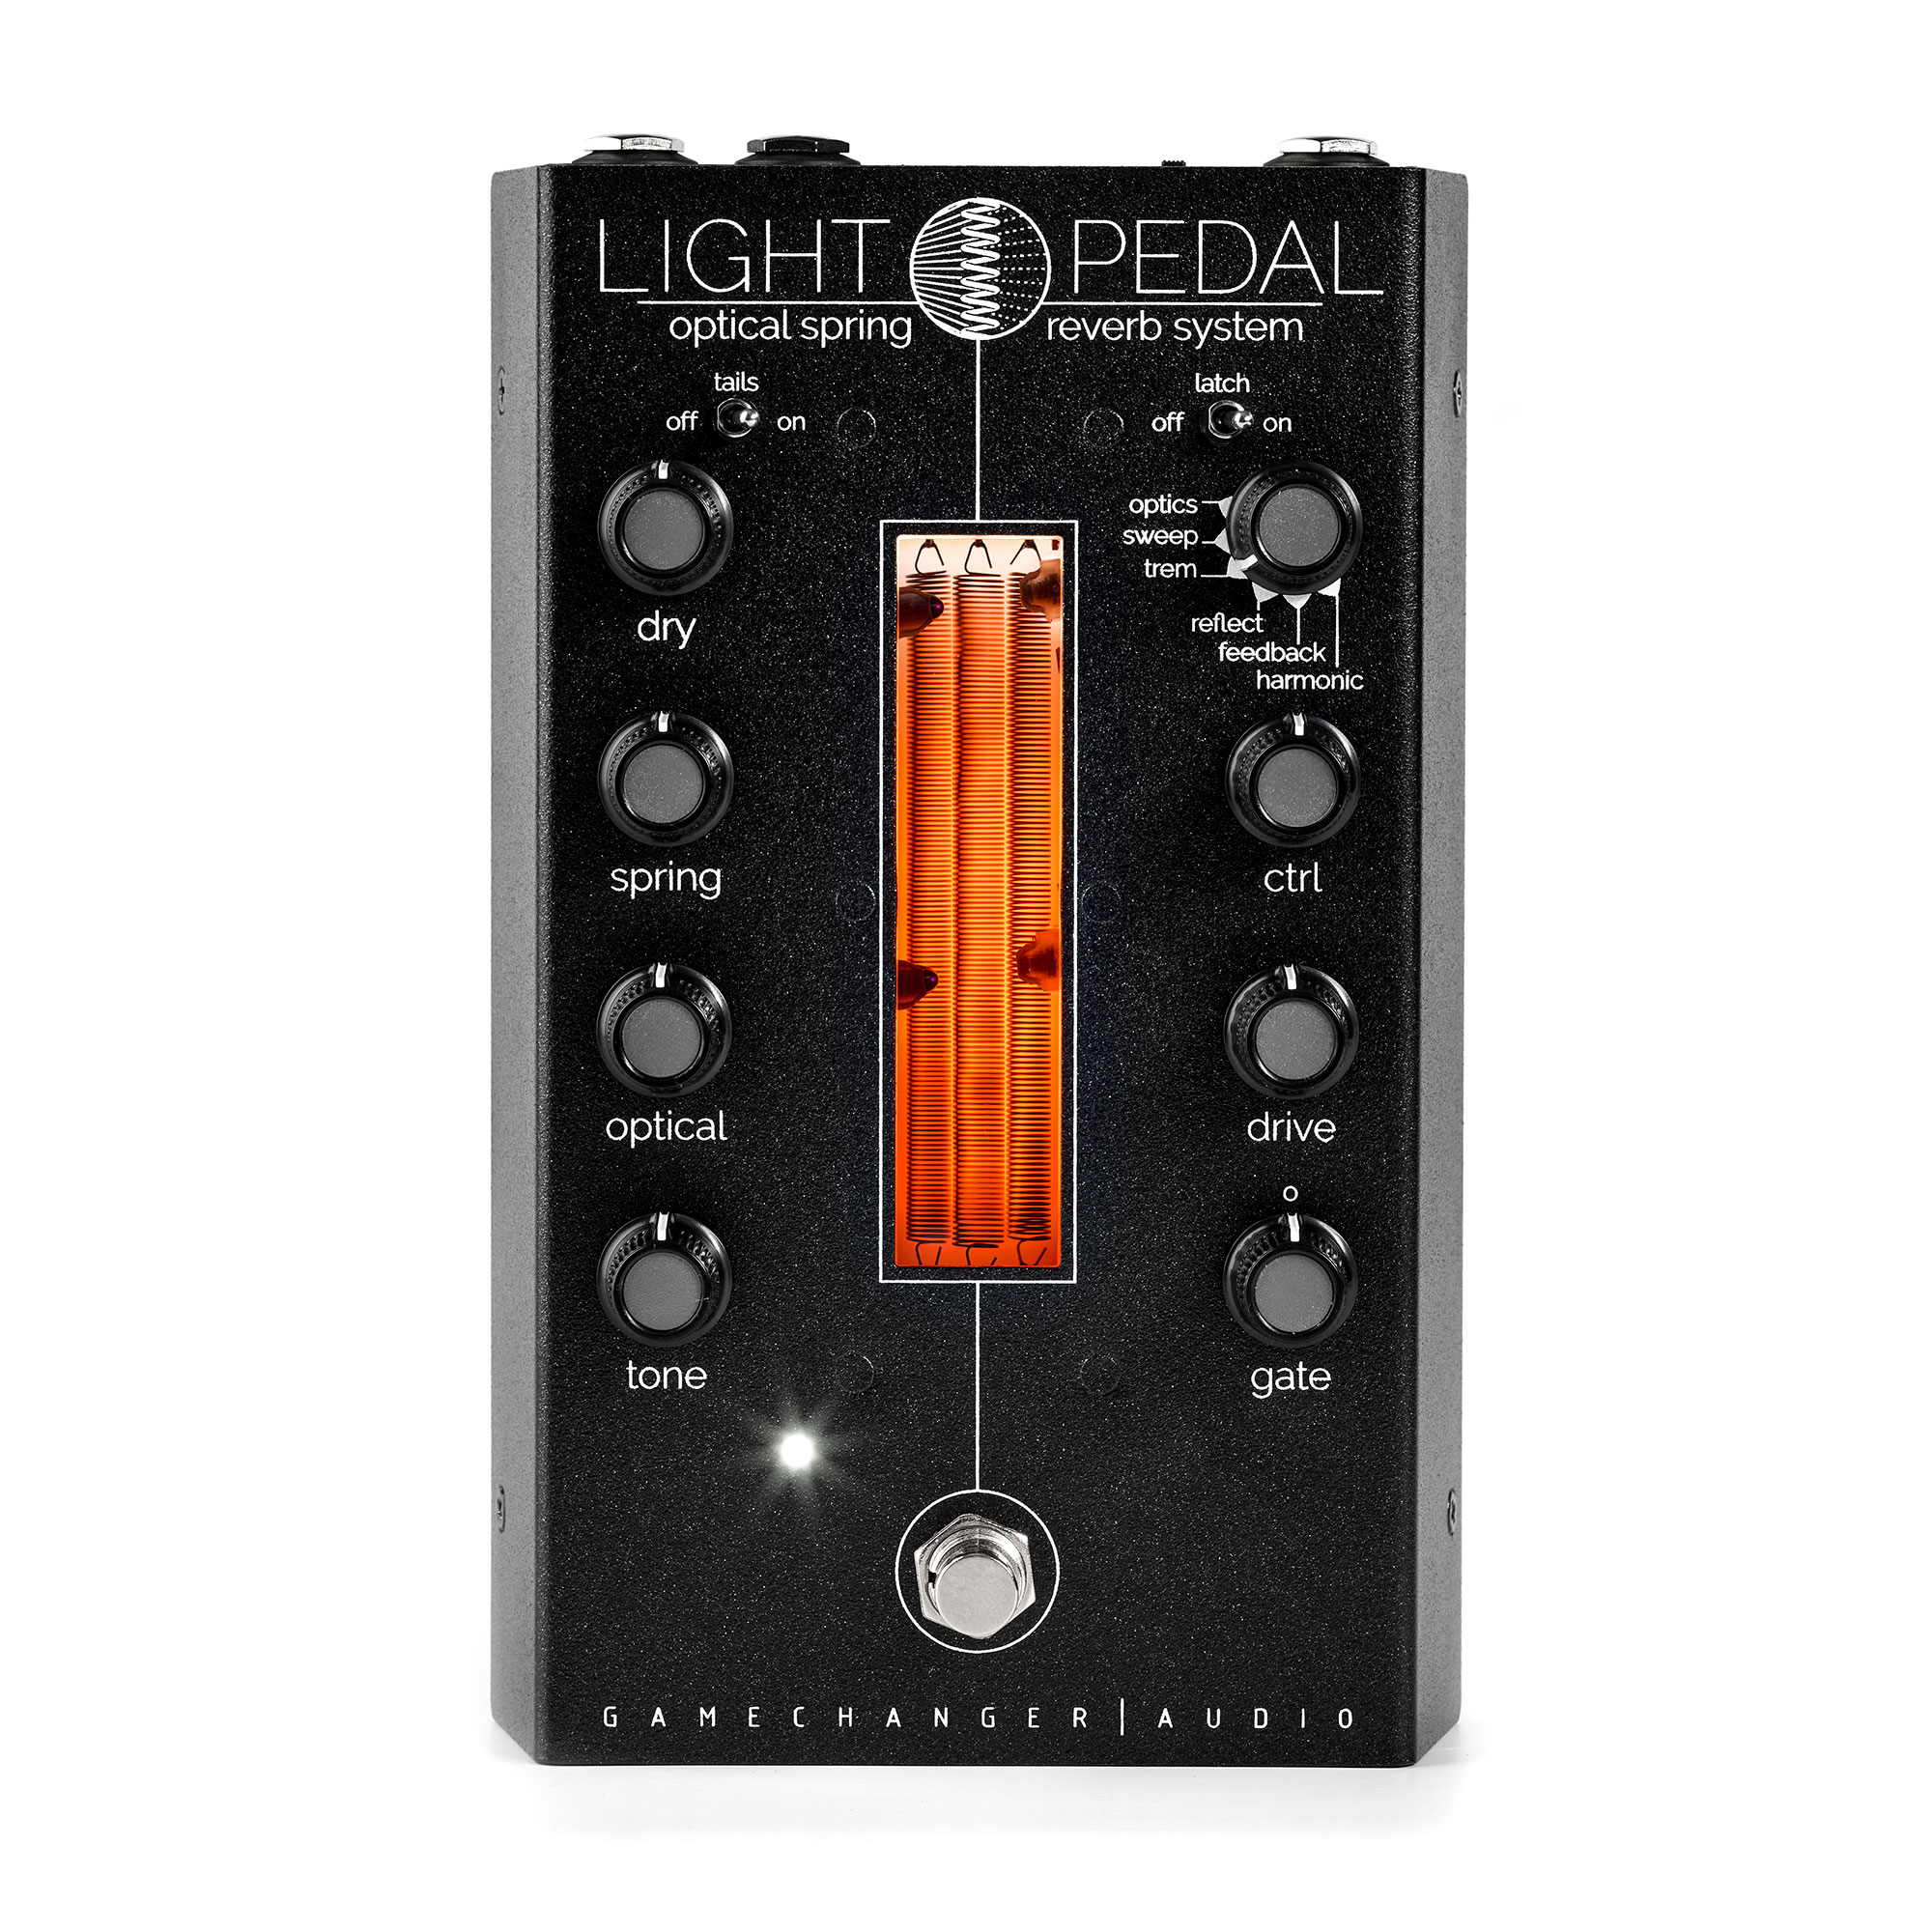 ギターGamechanger Audio  LIGHT PEDAL リバーブペダル